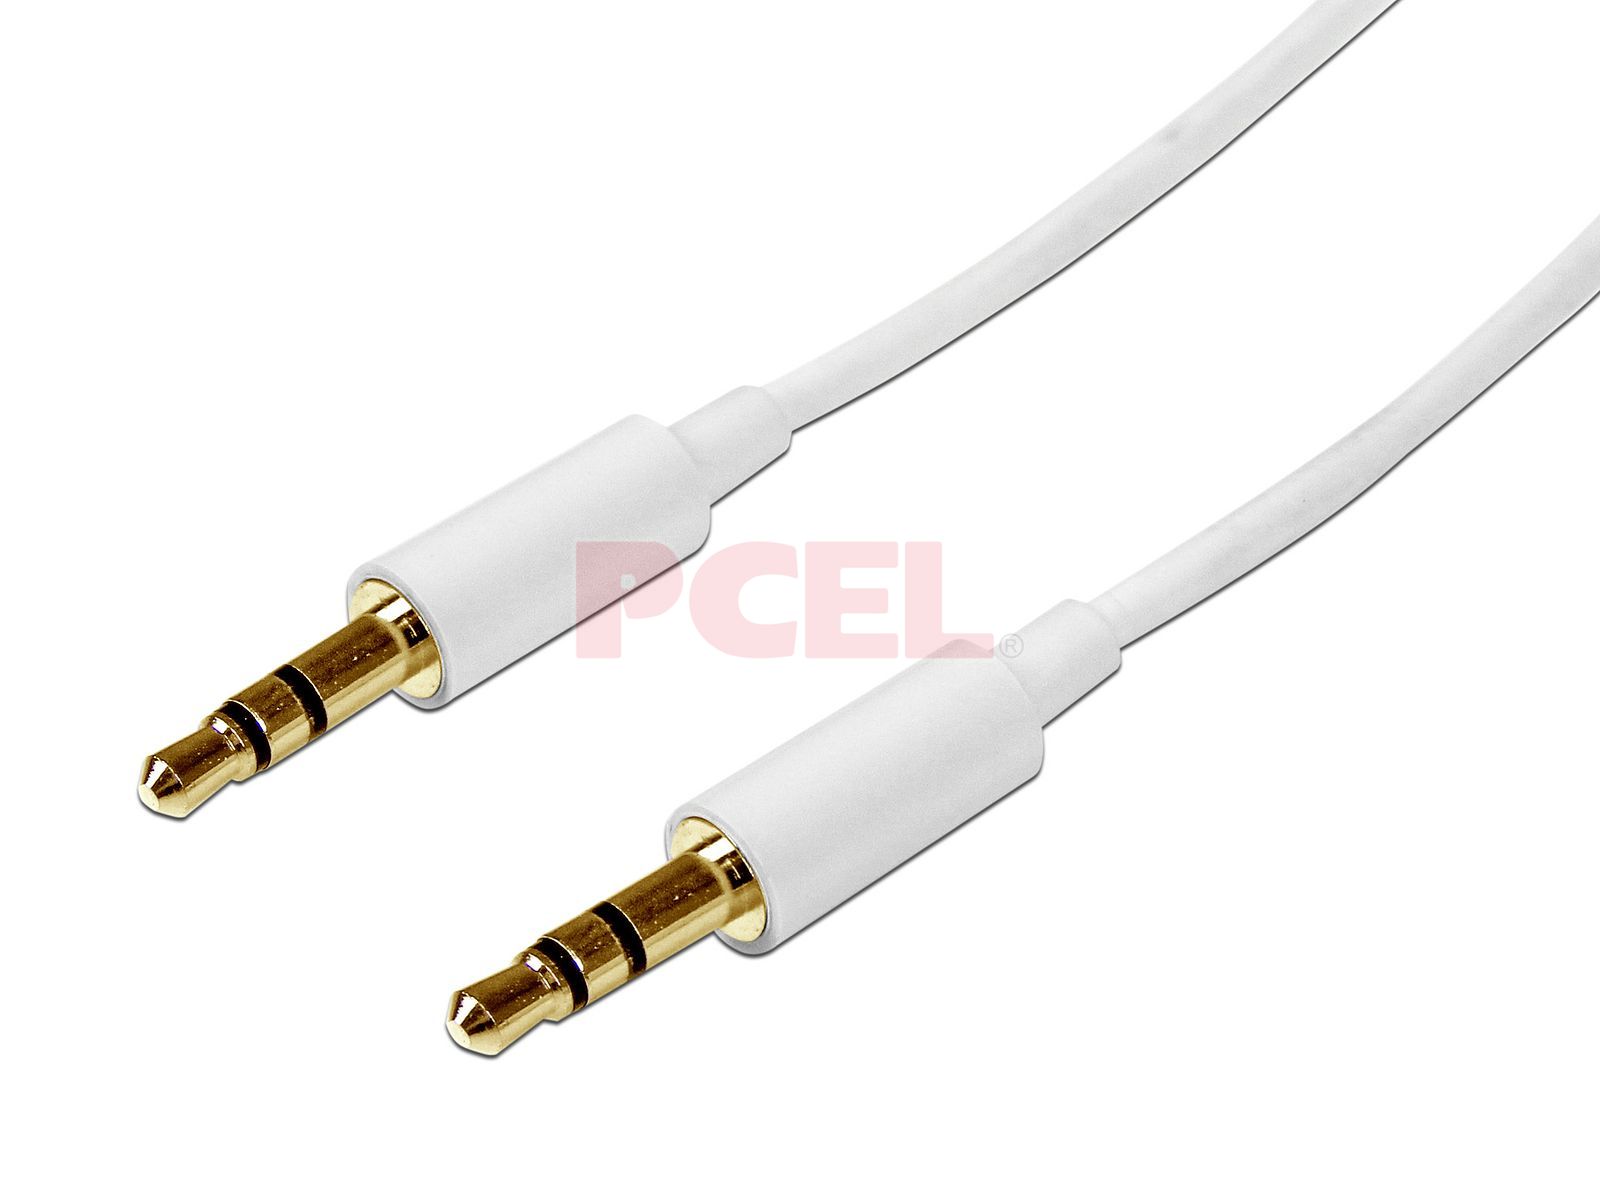 Delgado Pro 3,5 mm Conector Jack a Conector Jack Estéreo Audio Cable Cable Oro 3 m Negro 3 metros/3m 